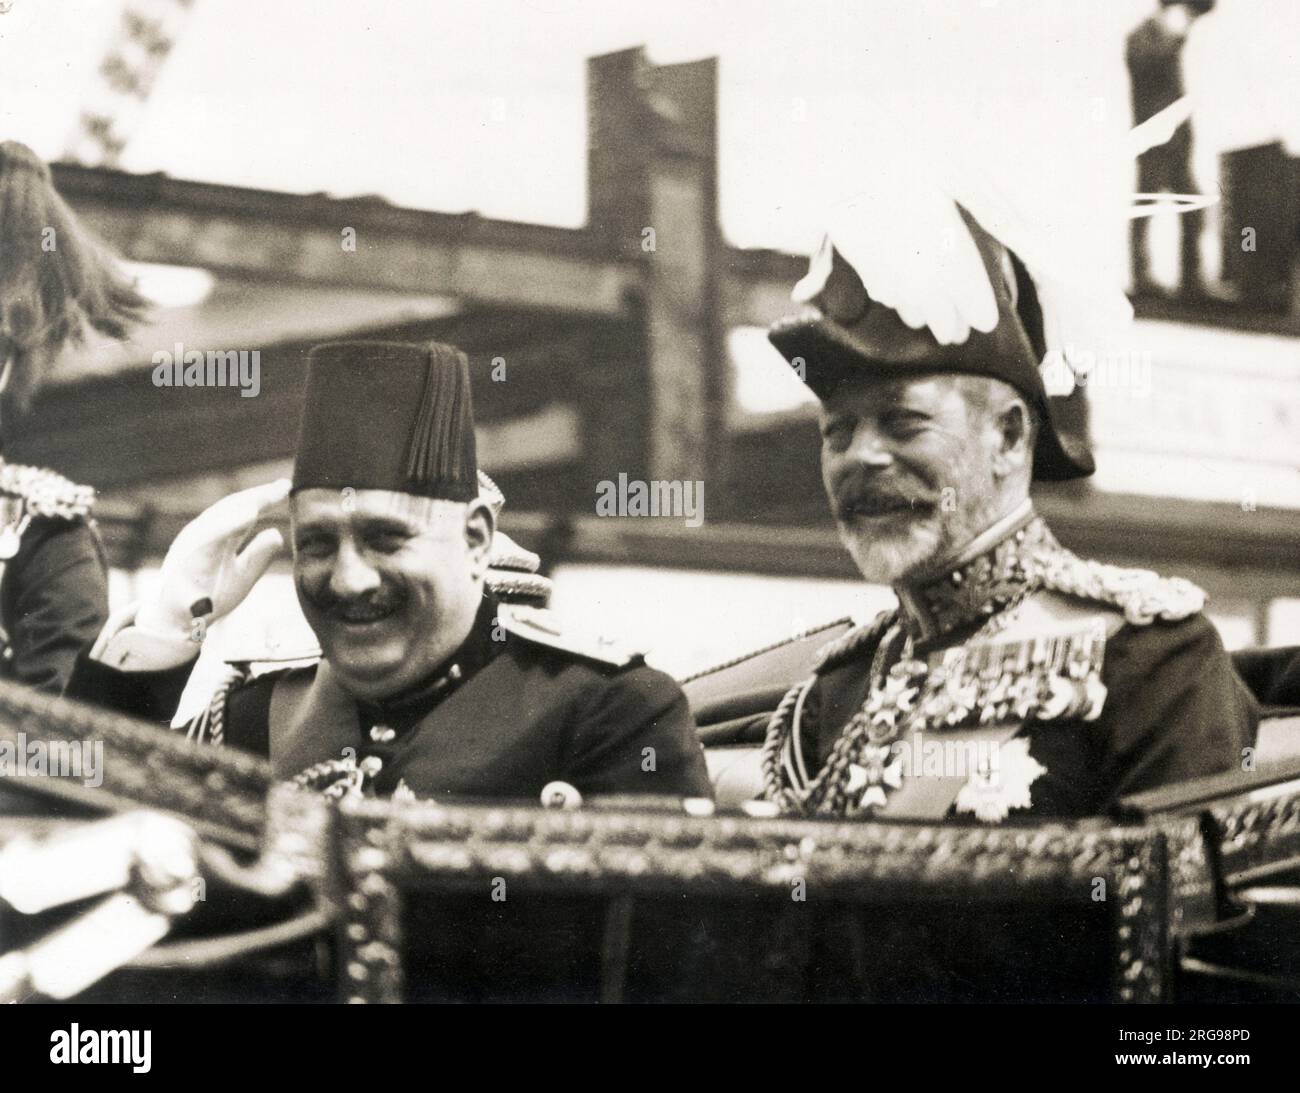 König Fuad von Ägypten – Offizieller 3-wöchiger Besuch in Großbritannien – mit König George V. in einer offenen Kutsche auf dem Weg von Victoria Station zum Buckingham Palace, London am 4. Juli 1927 Stockfoto